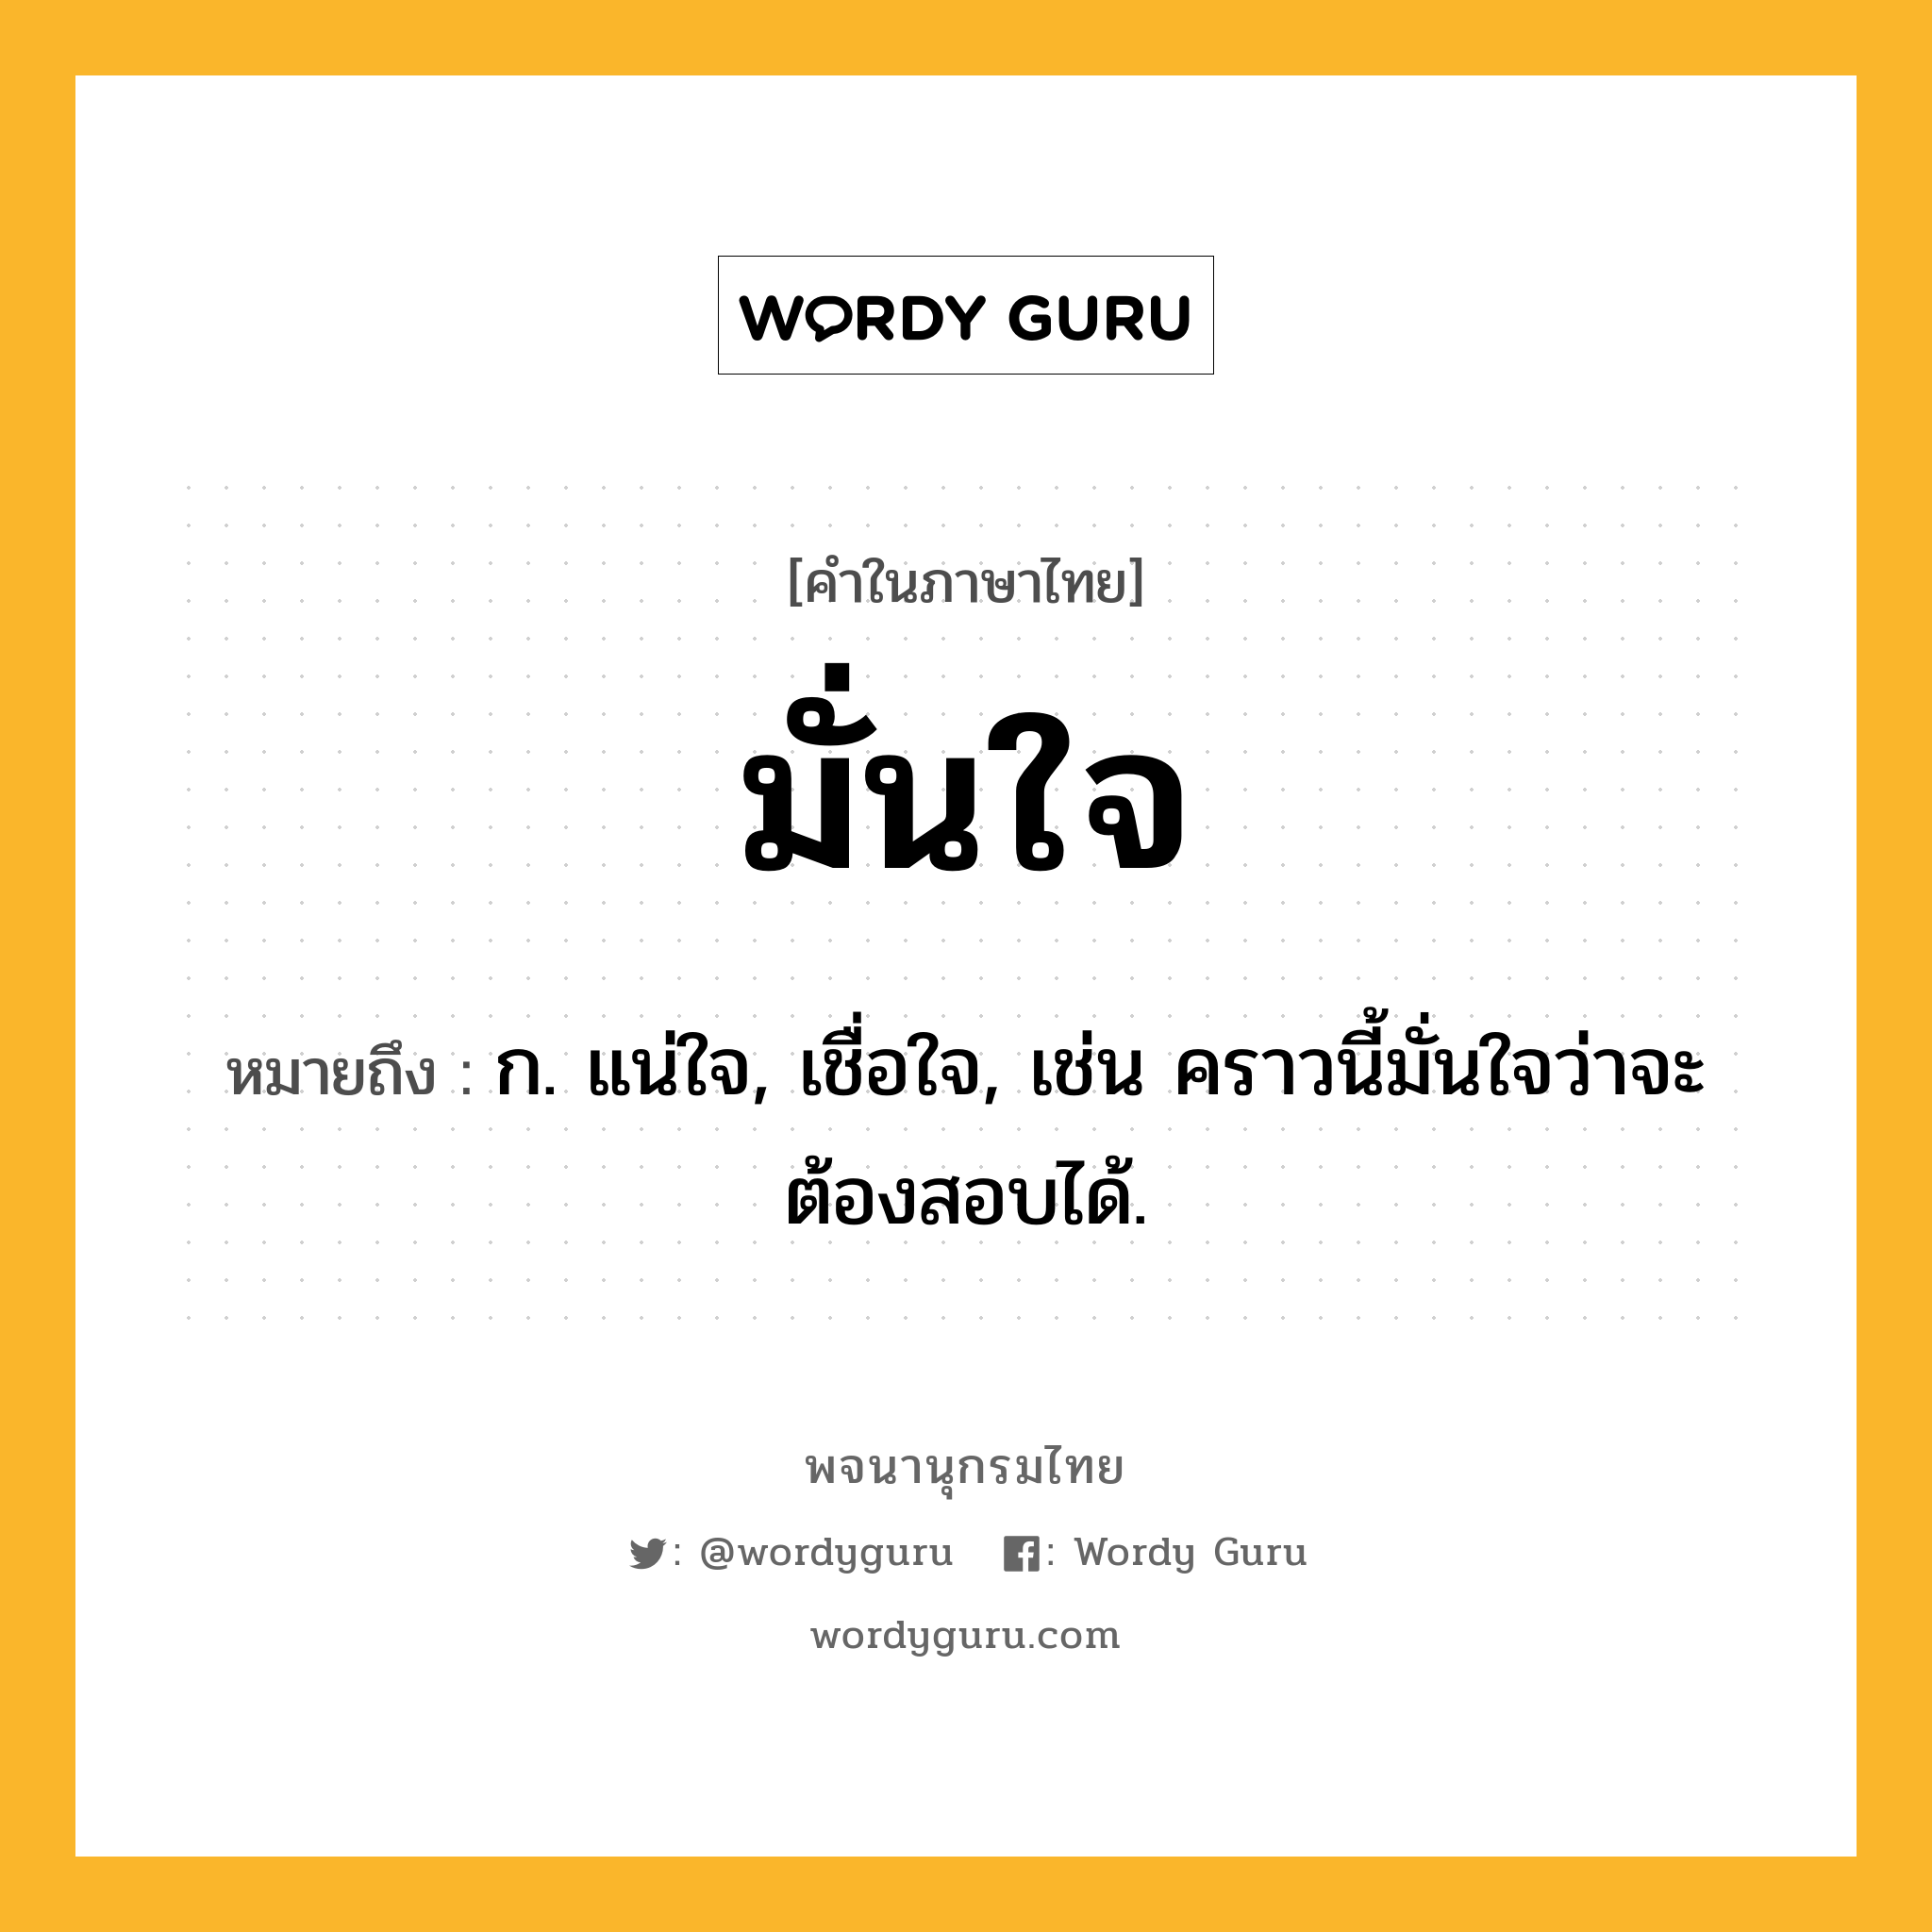 มั่นใจ หมายถึงอะไร?, คำในภาษาไทย มั่นใจ หมายถึง ก. แน่ใจ, เชื่อใจ, เช่น คราวนี้มั่นใจว่าจะต้องสอบได้.